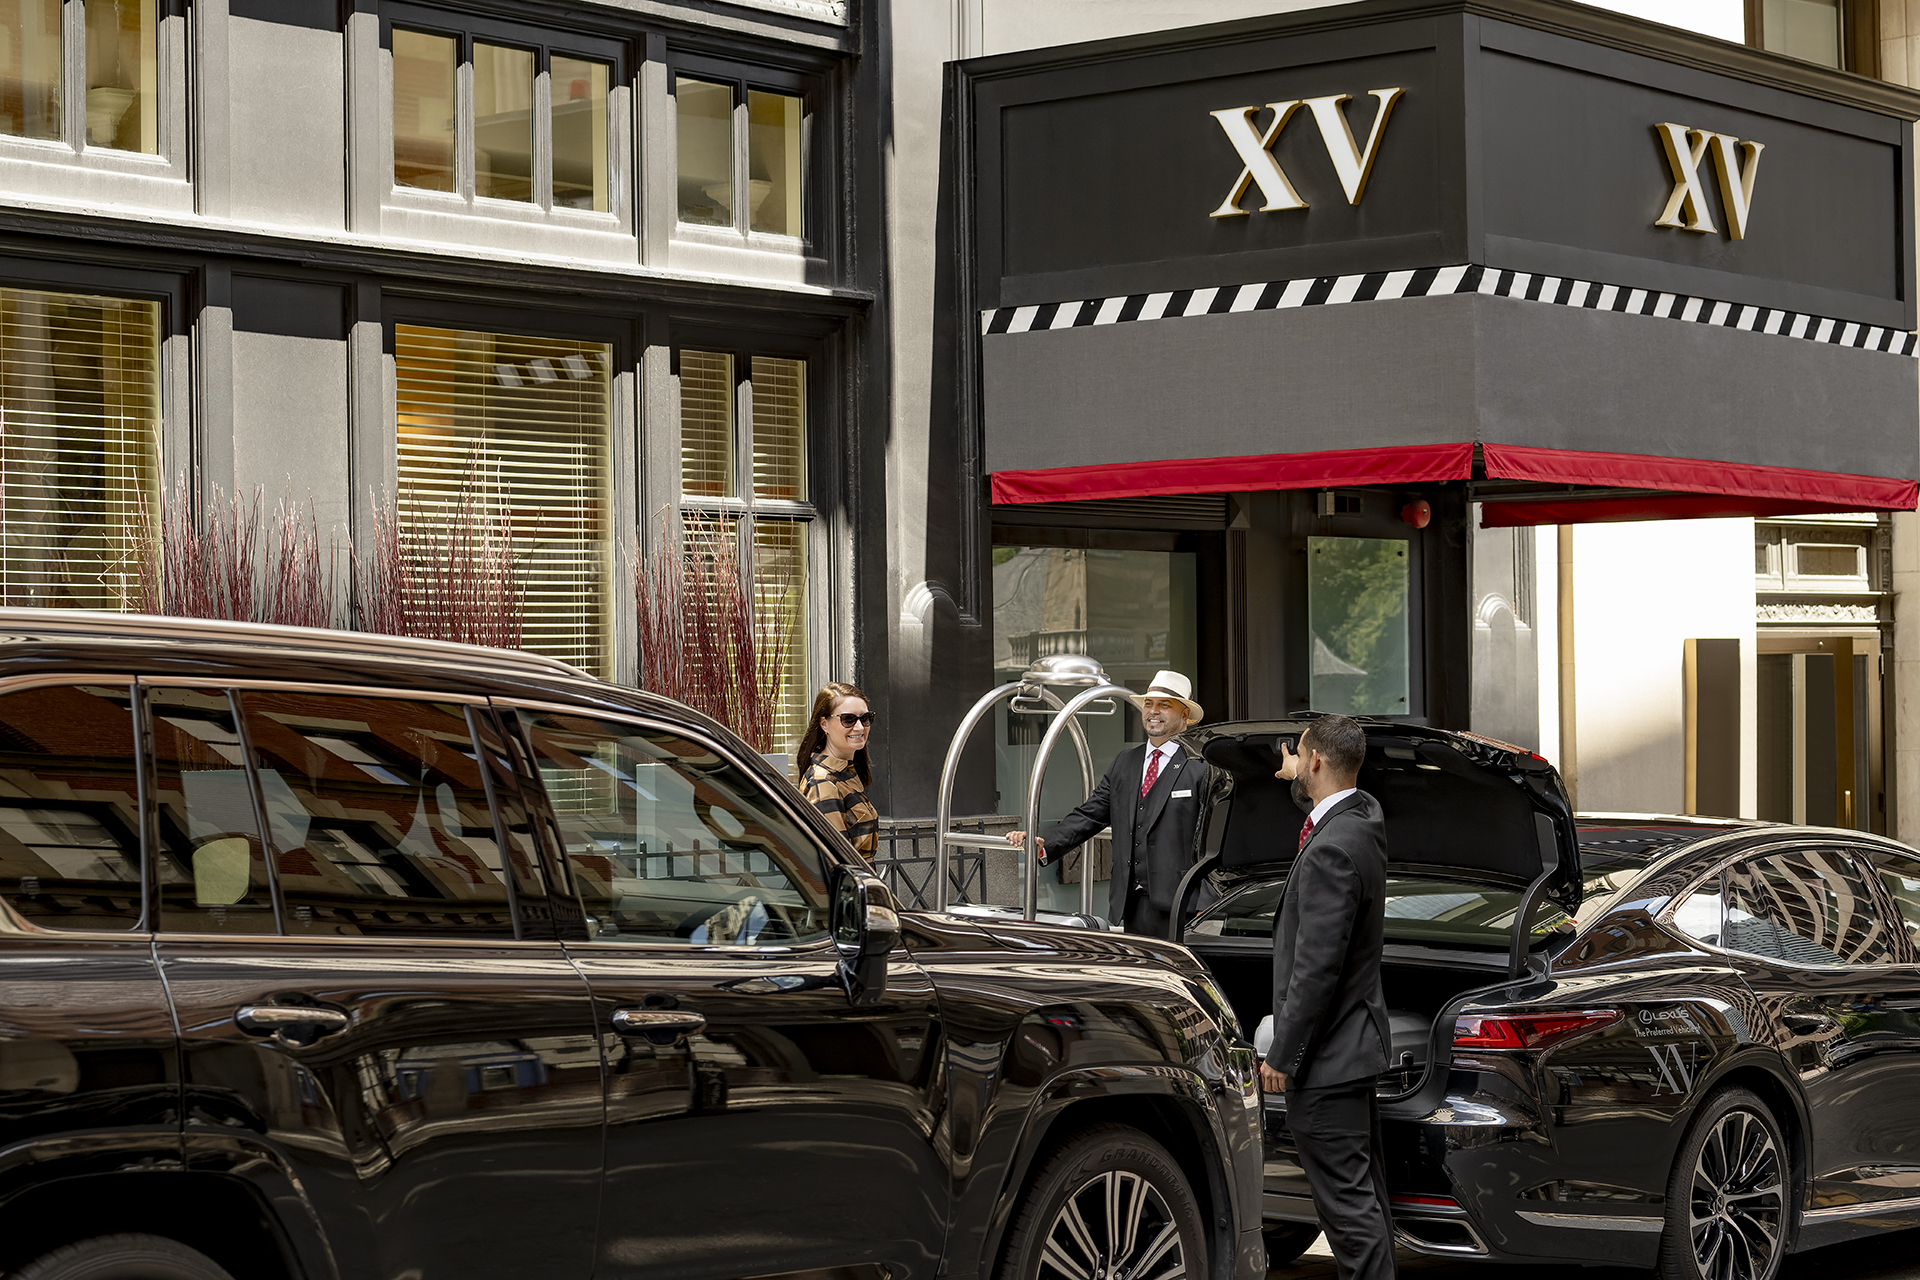 XV Beacon Hotel, Boston, MA, USA,  arrival experience